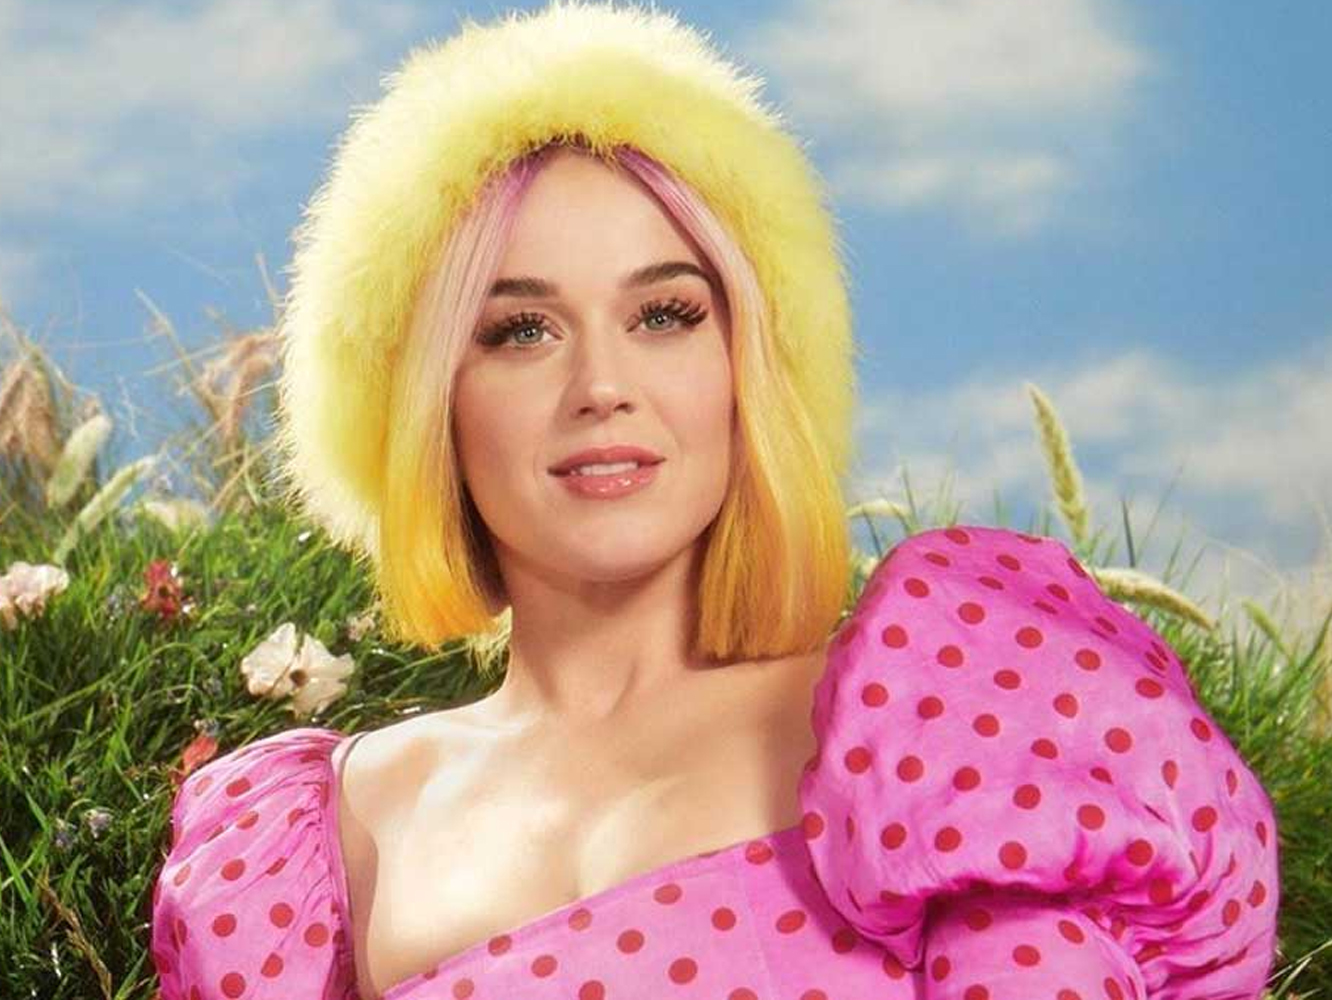 Fantástico lyric vídeo para ‘Small Talk’, el relativamente fantástico nuevo single de Katy Perry